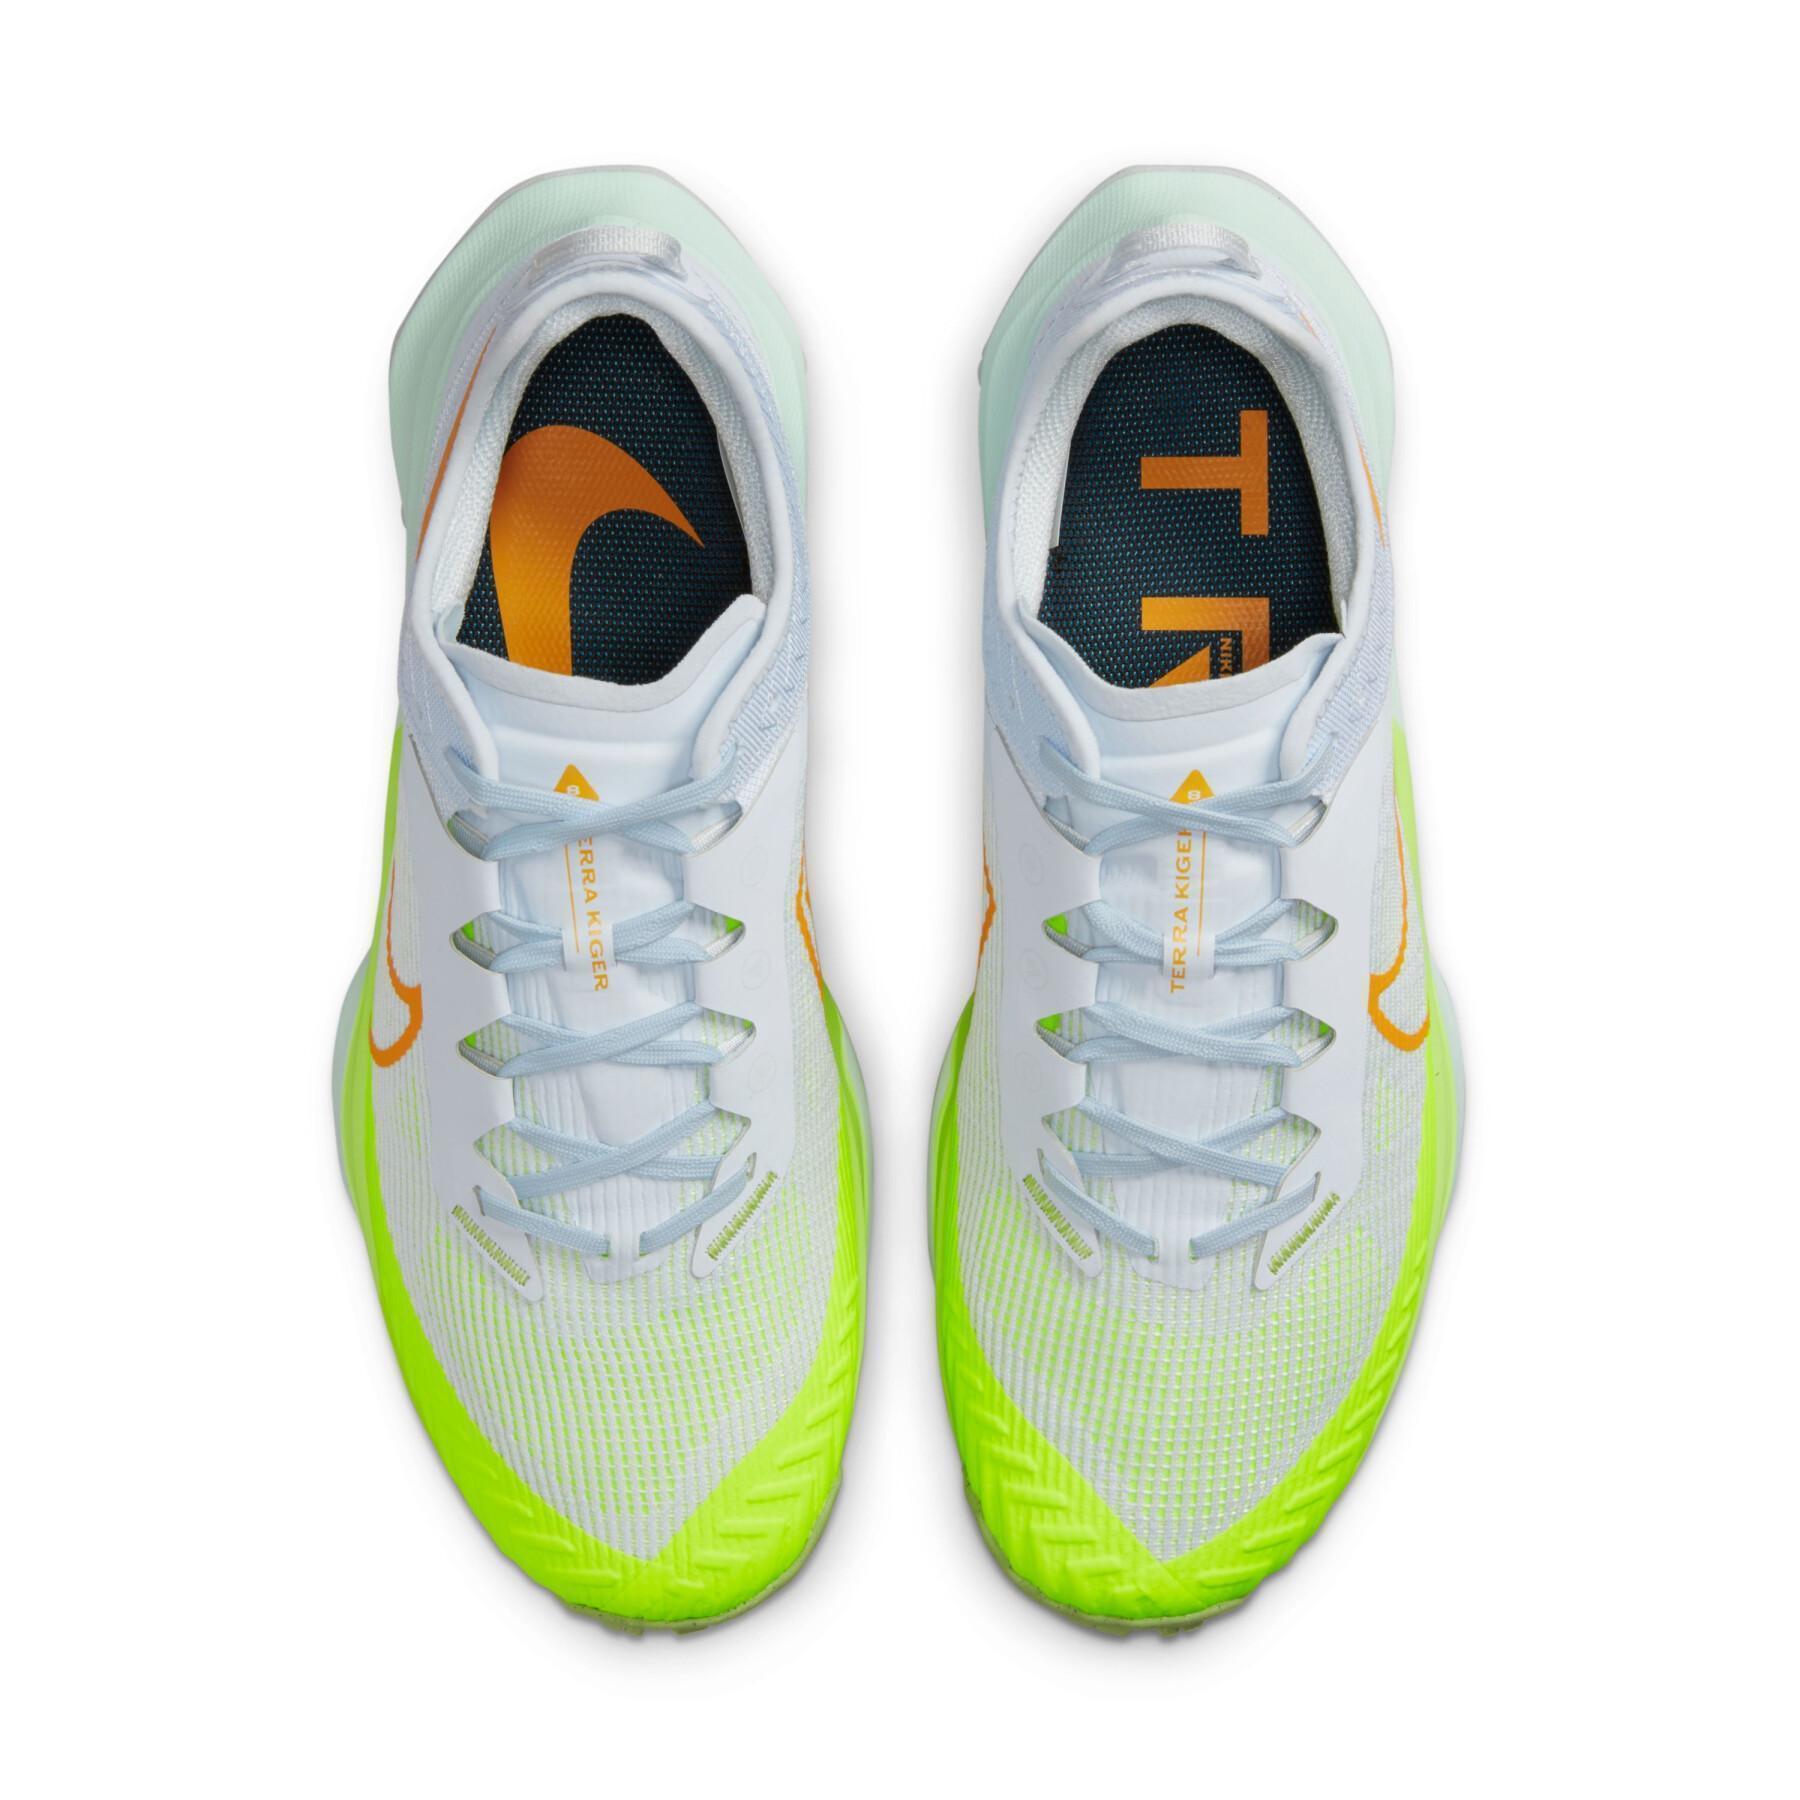 Chaussures de trail Nike Air Zoom Terra Kiger 8